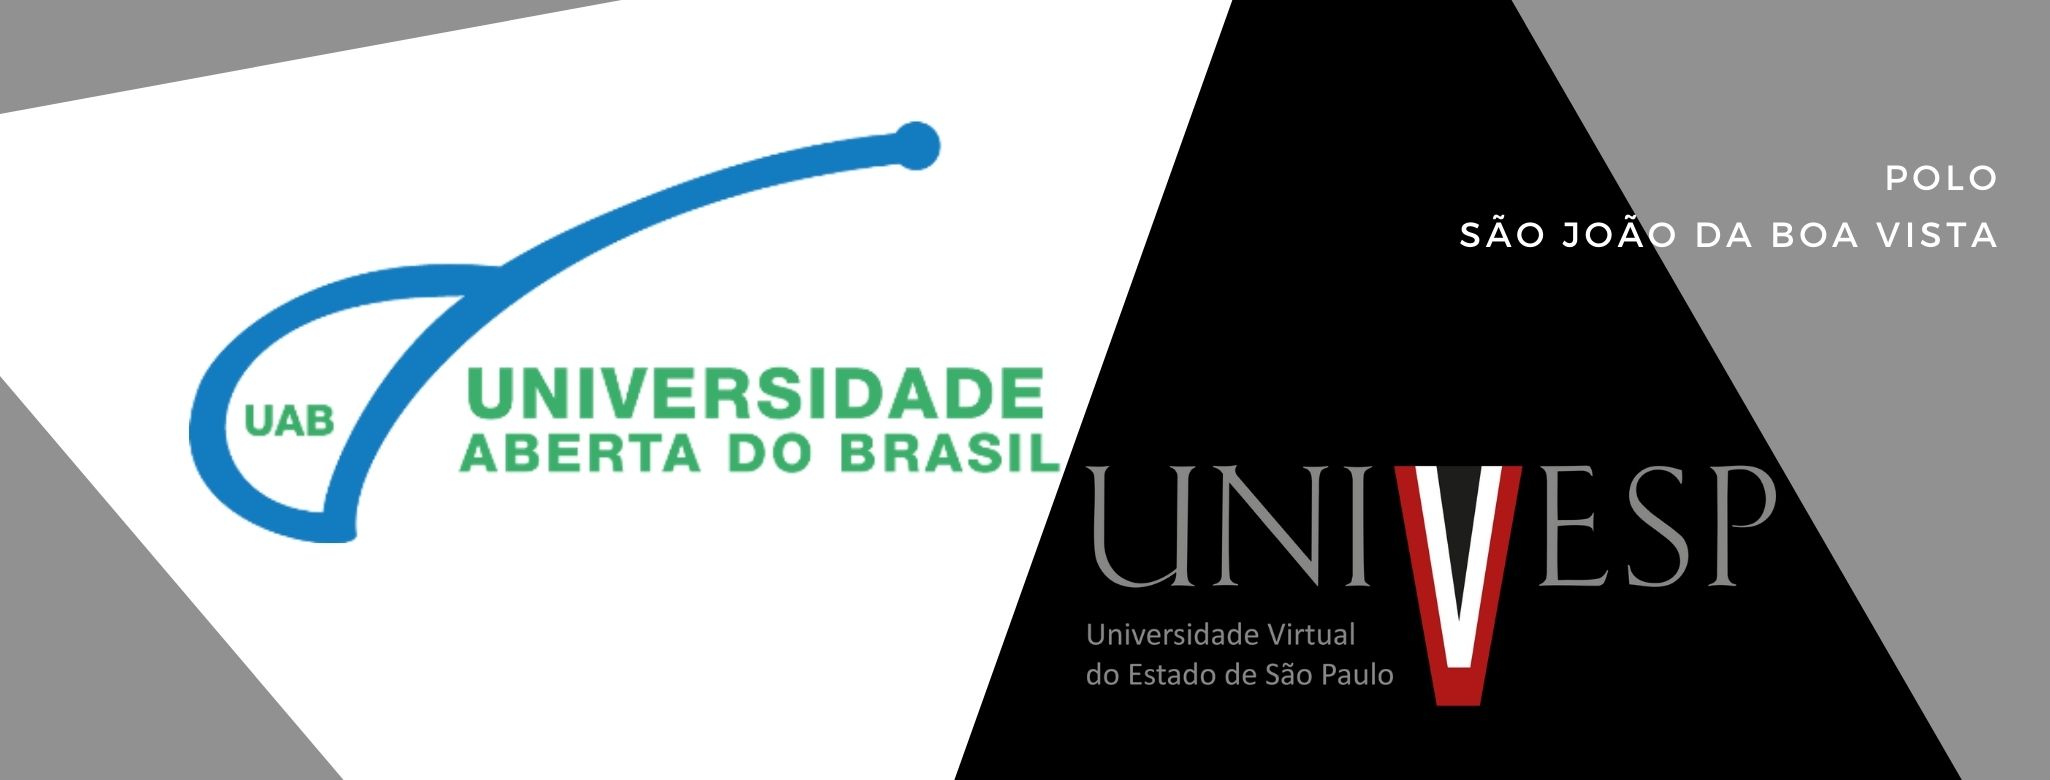 O Polo da Universidade Aberta do Brasil, Participa da II CONFERÊNCIA MUNICIPAL DE EDUCAÇÃO.